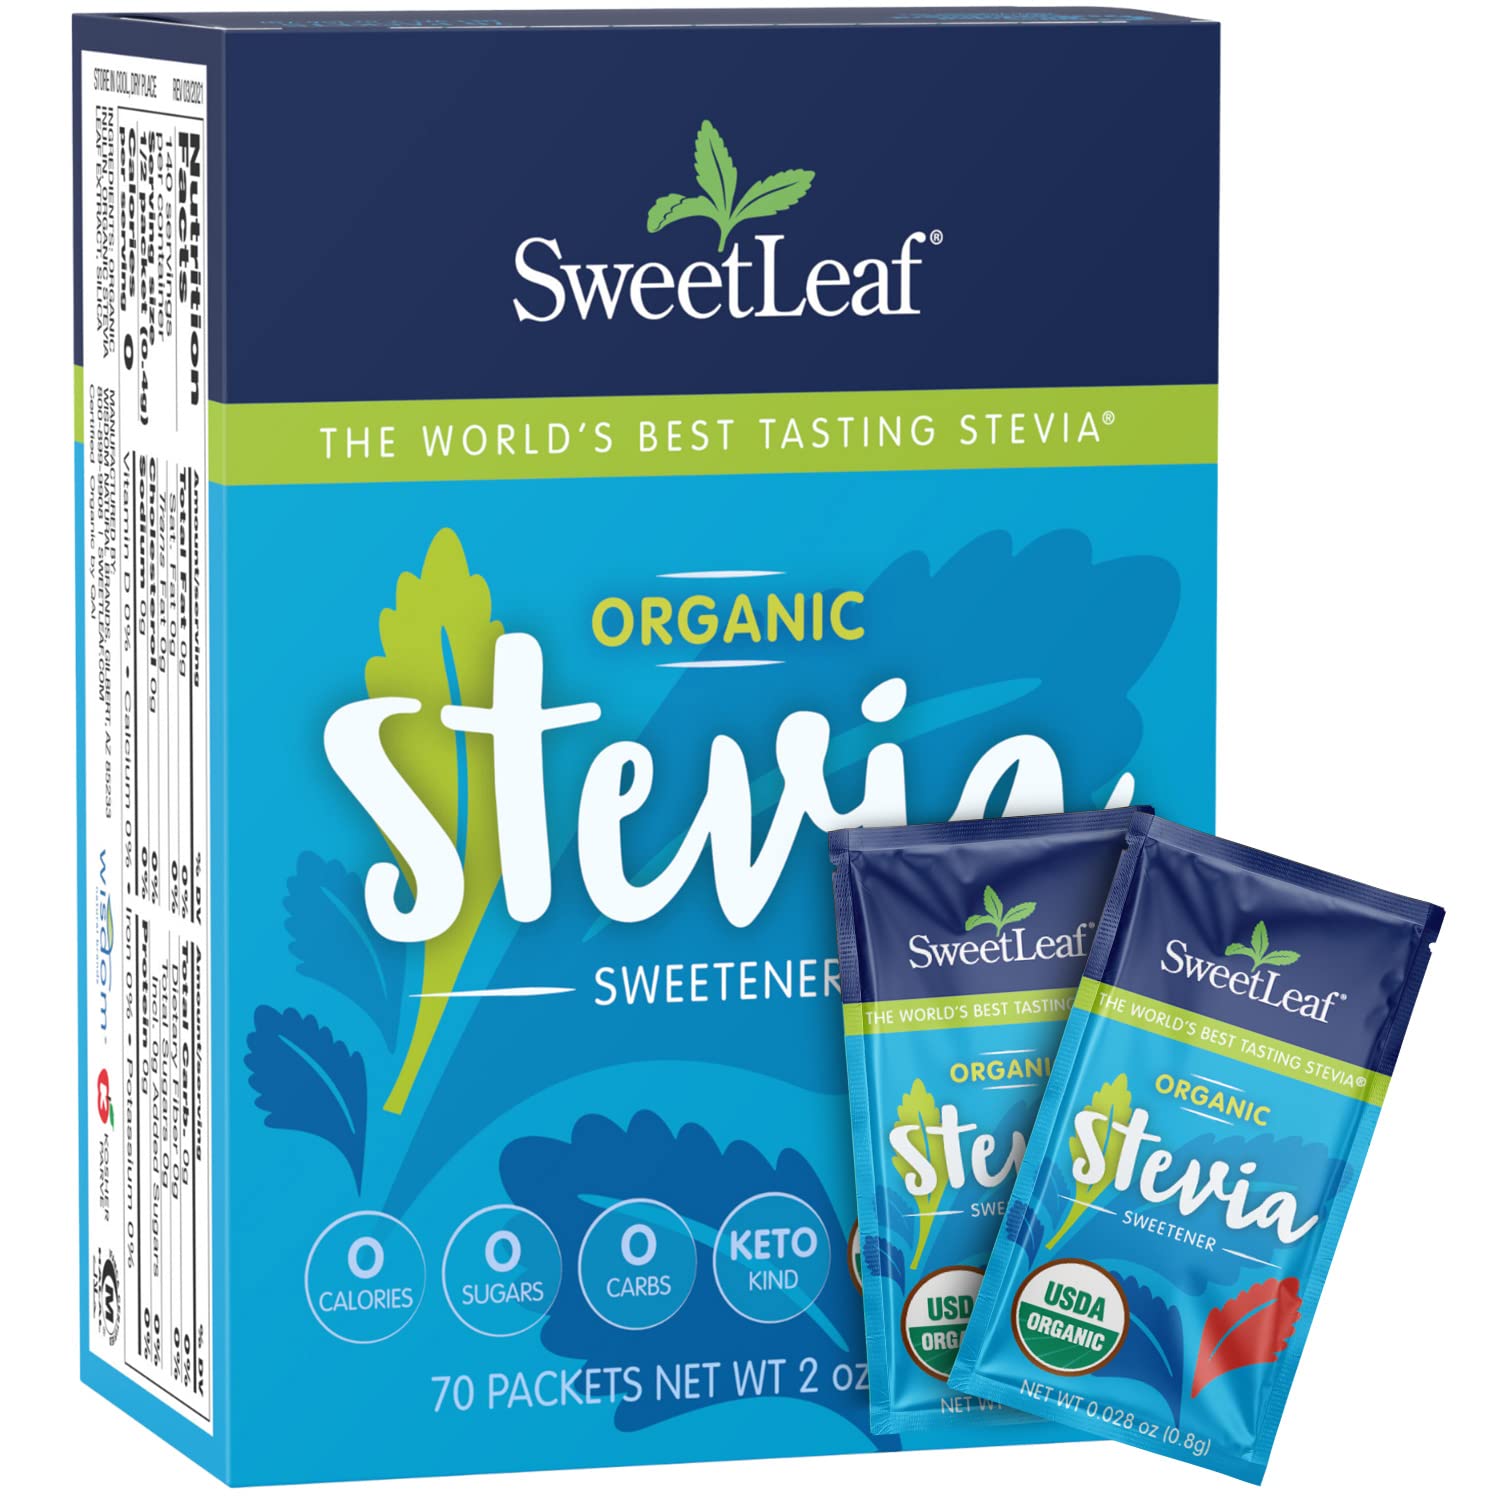 Sweet Leaf Stevia Organic Sweet Leaf Stevia PKets 70 ct by SweetLeaf